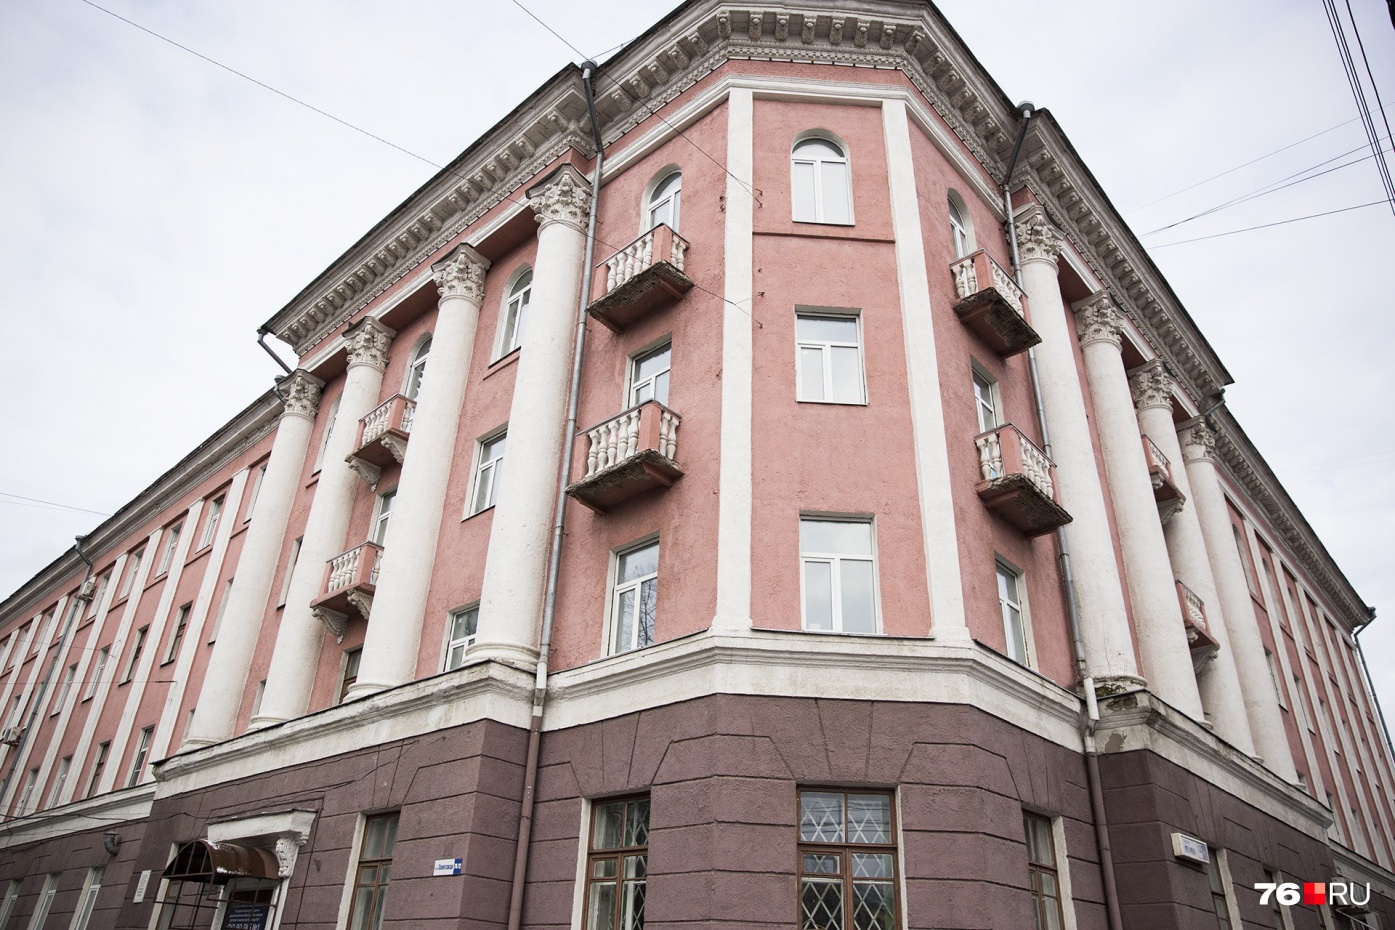 Аварийное здание бывшей детской больницы в Ярославле признали памятником